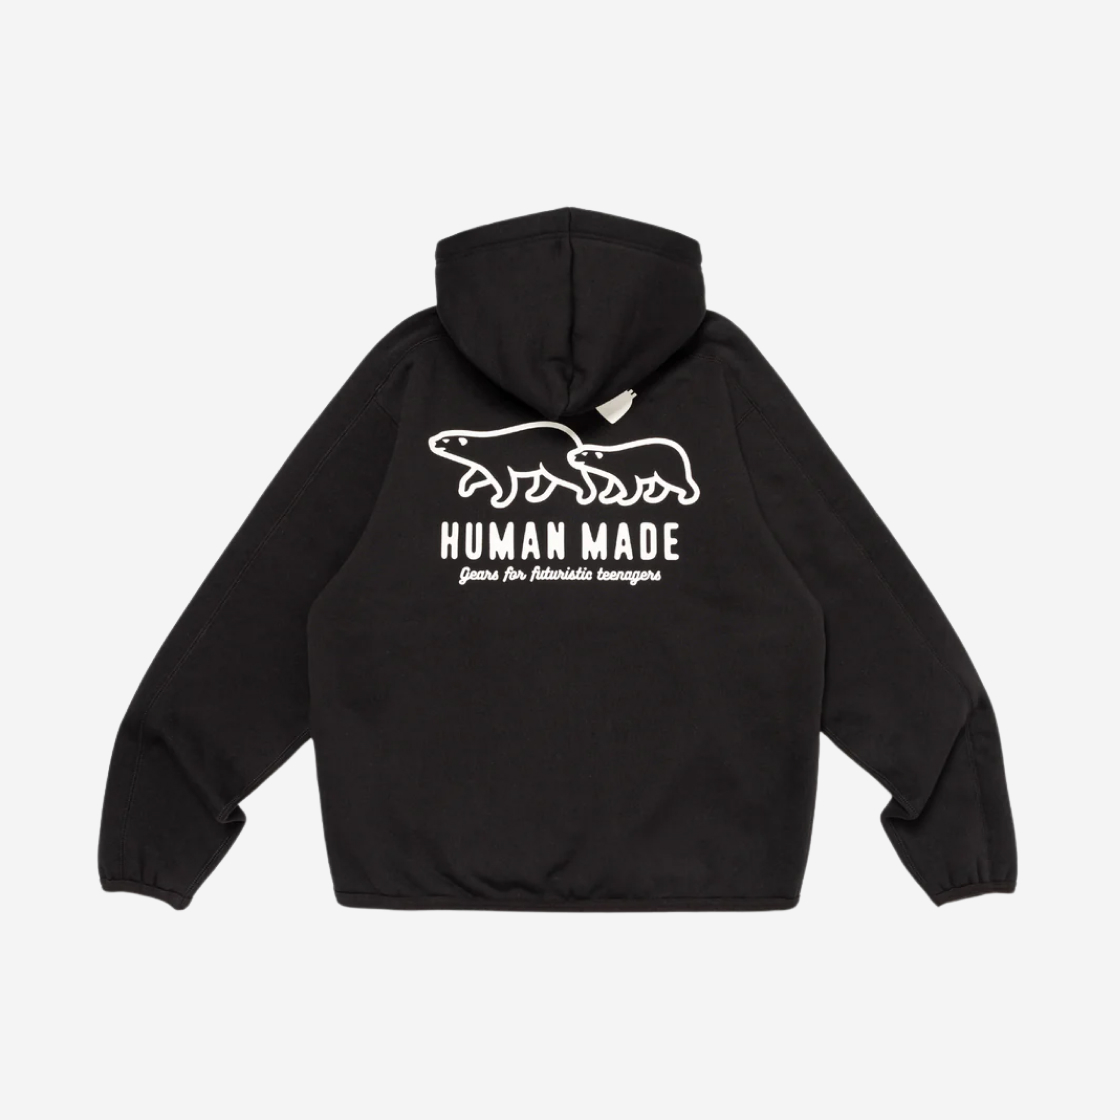 14,900円HUMAN MADE Fleece Sweat Zip Hoodie BLACK